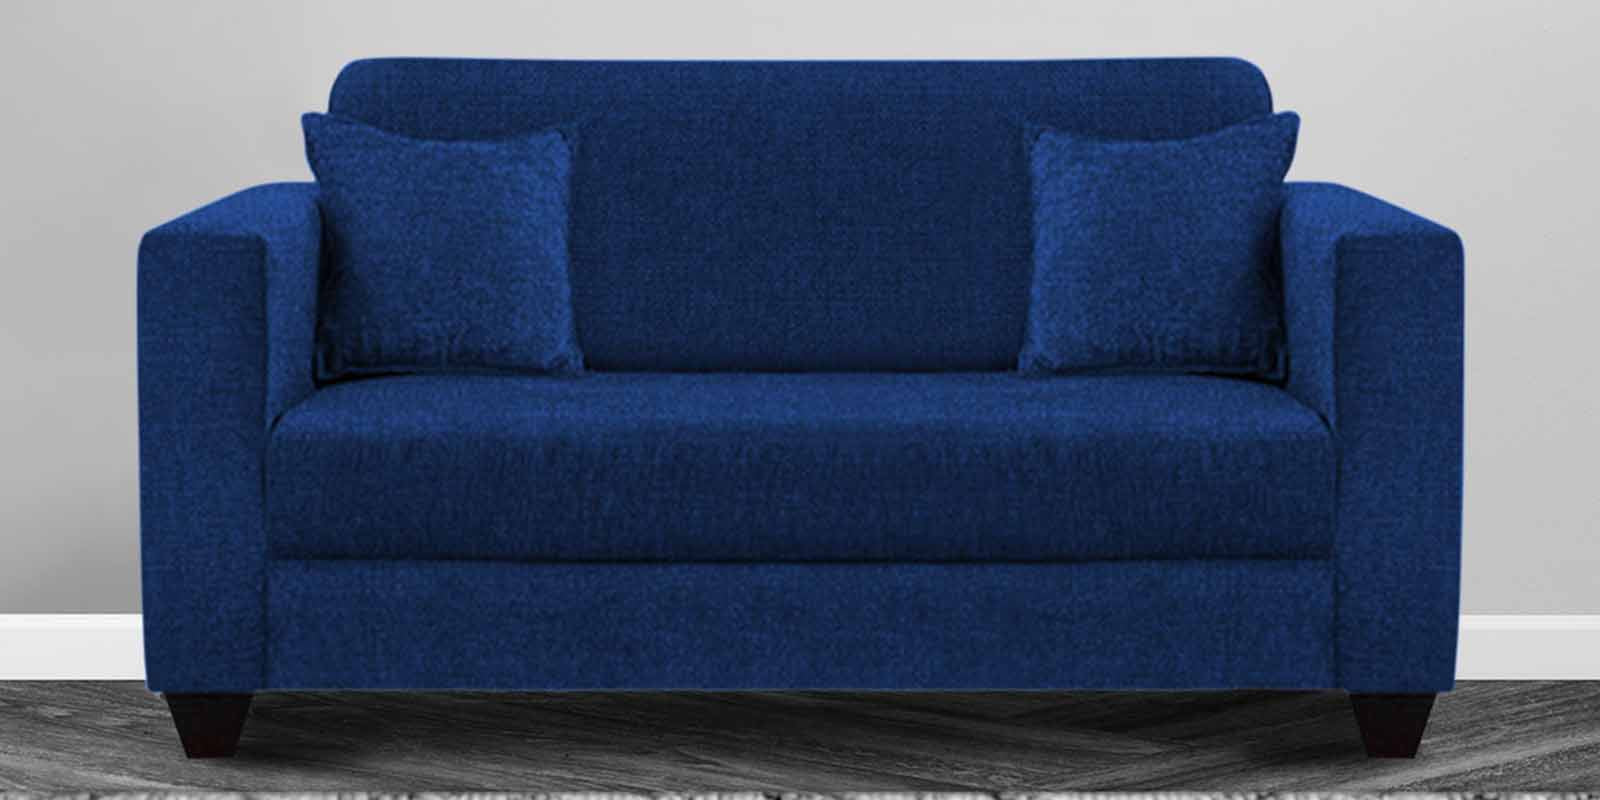 Nebula Fabric 2 Seater Sofa in Royal Blue Colour